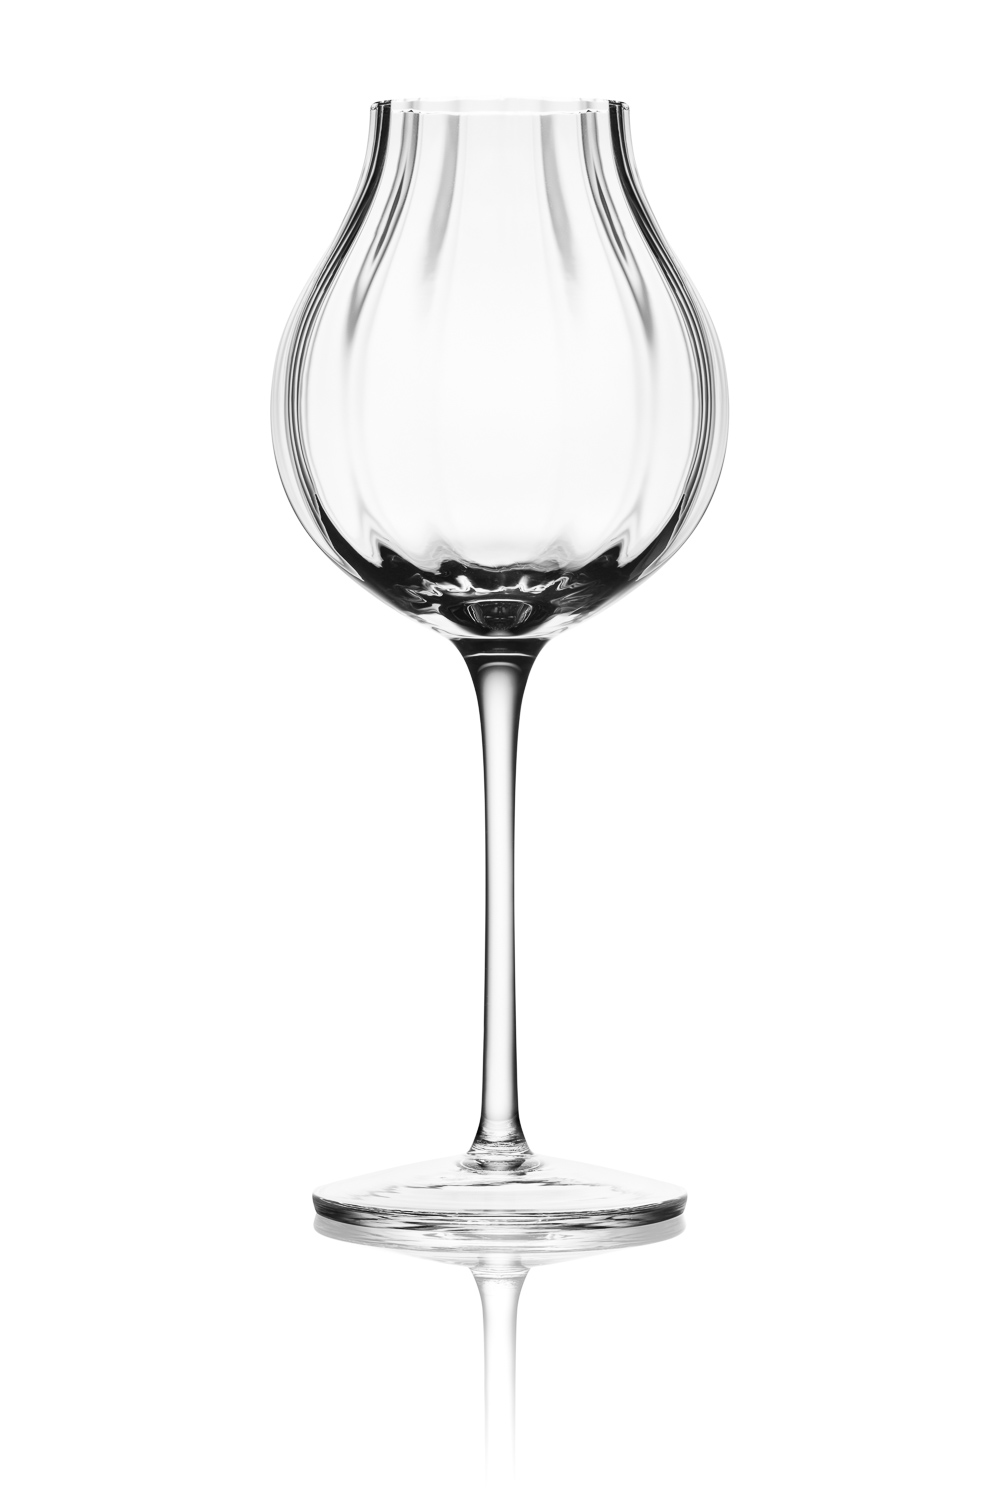 Kieliszek do degustacji whisky g600 marki Amber Glass